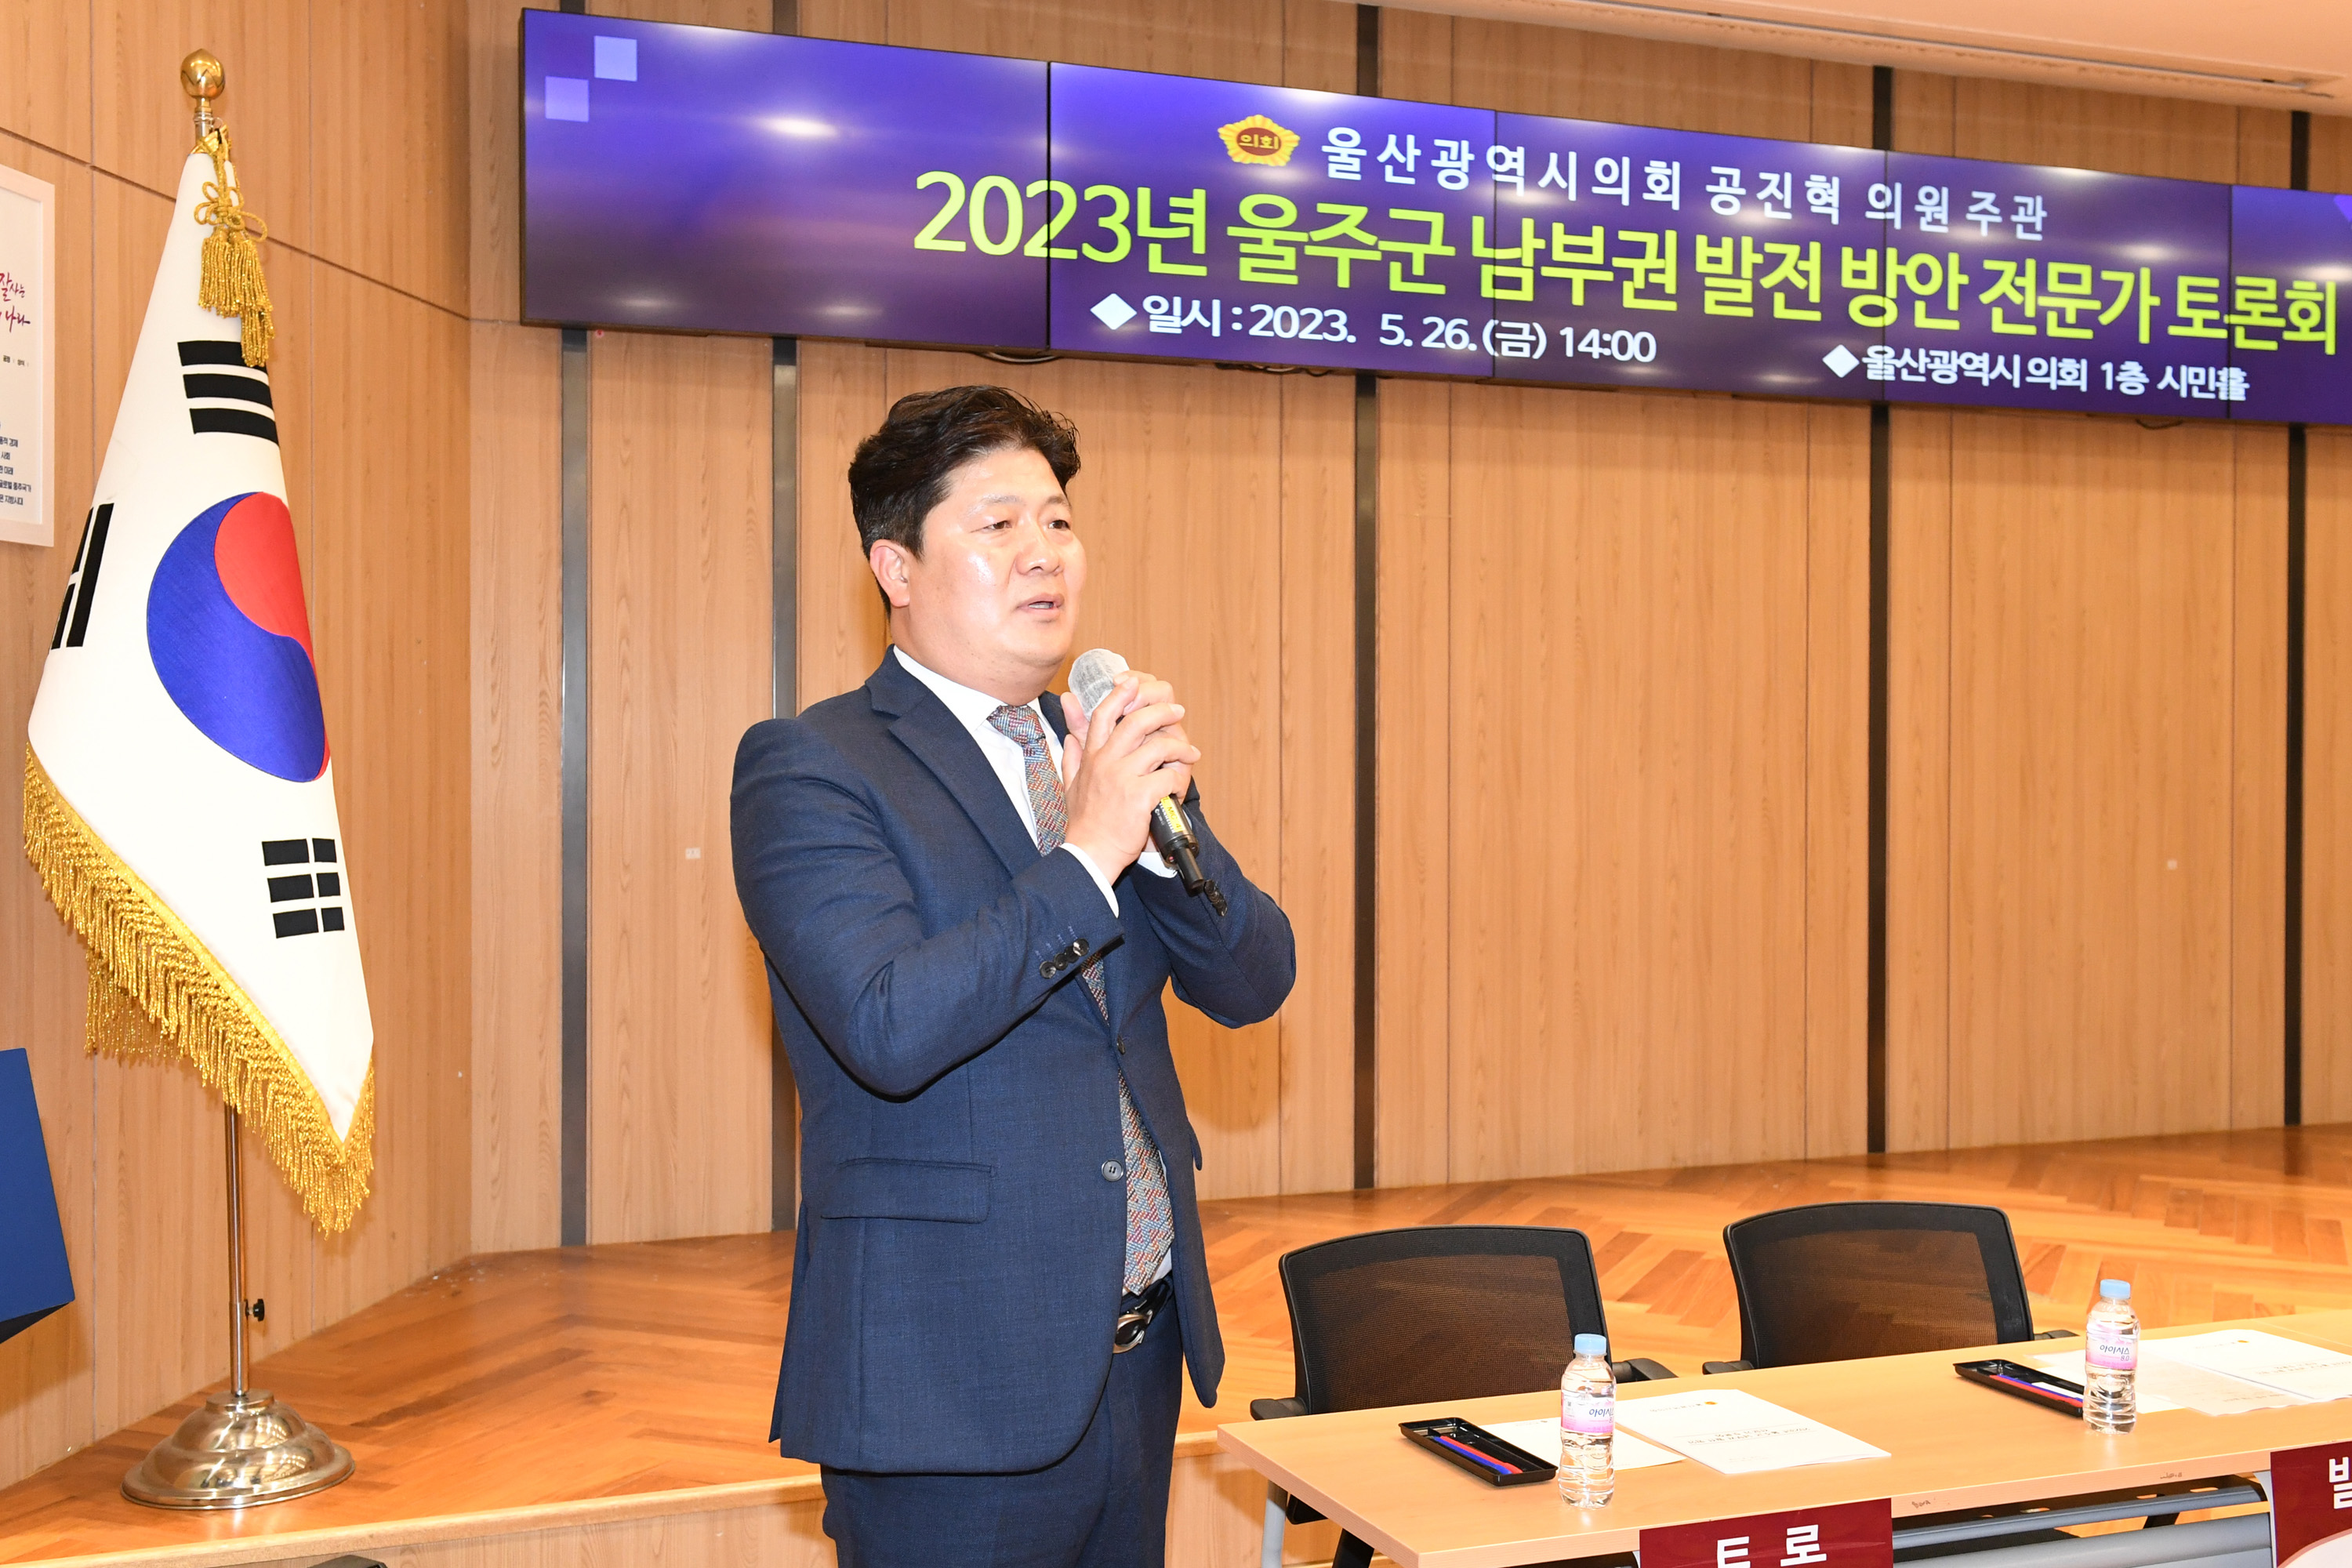 공진혁 의원, 2023년 울주군 남부권 발전 방안 전문가 토론회 개최3